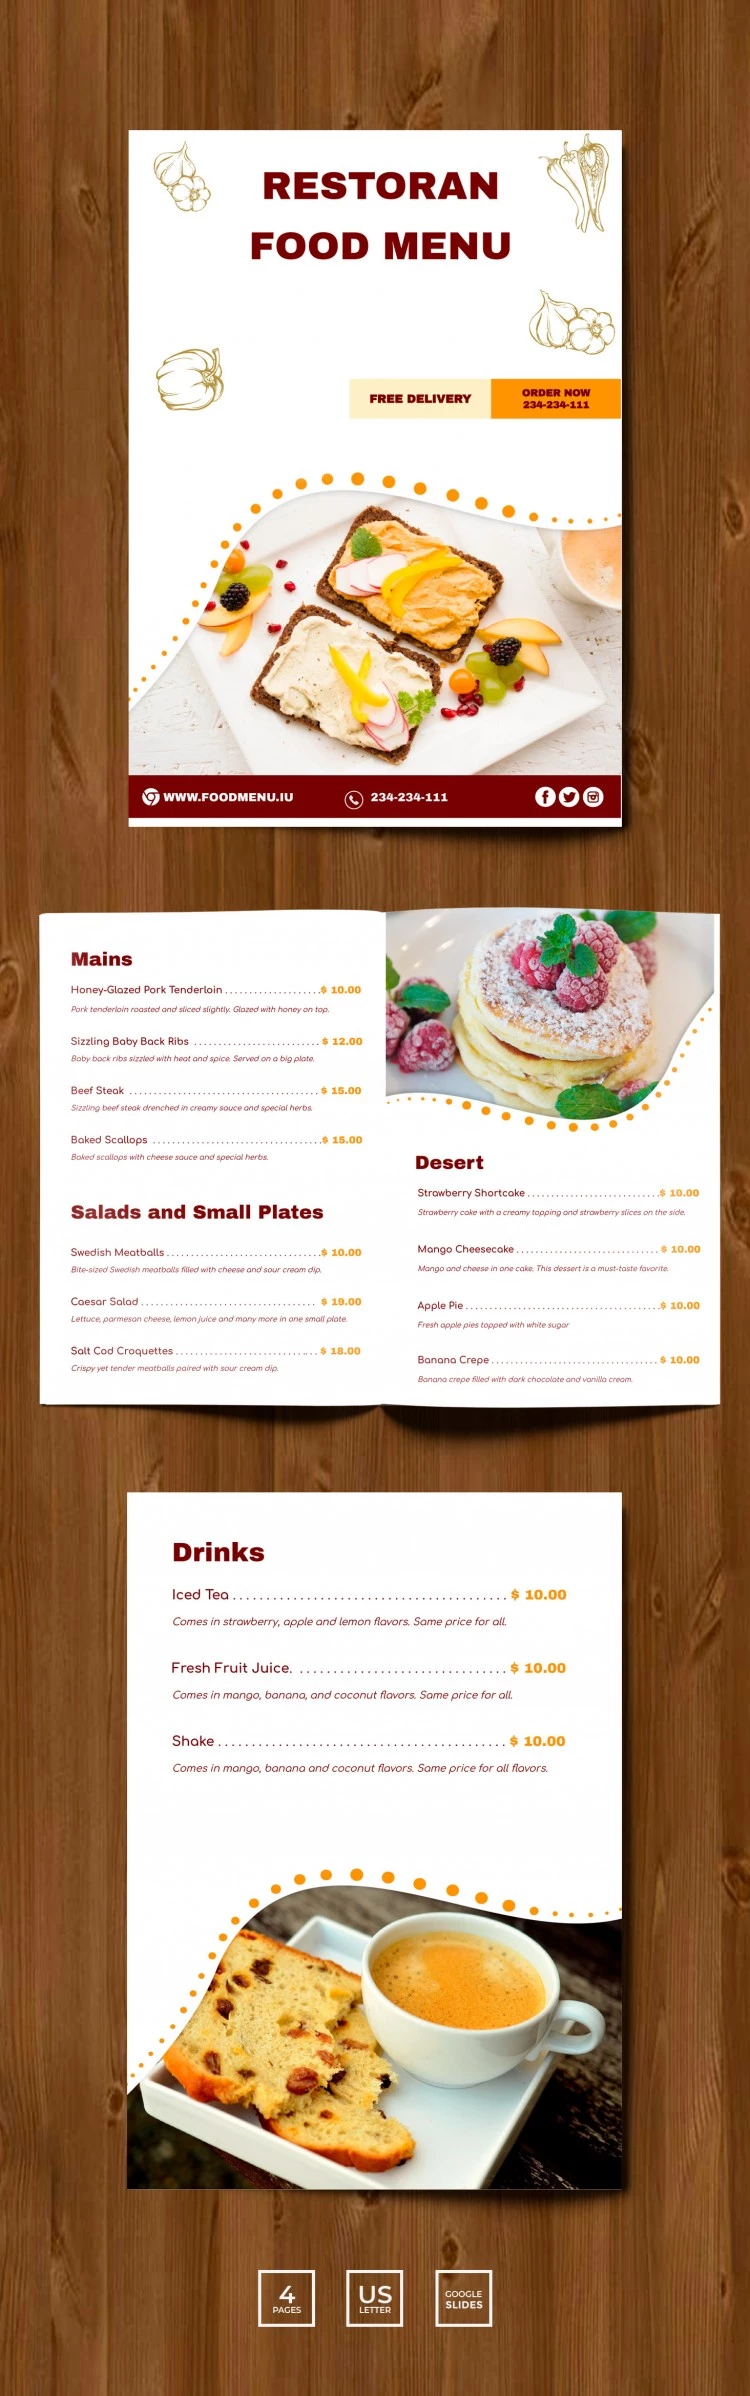 Menu do Restaurante em Formato de Livreto - free Google Docs Template - 10061780